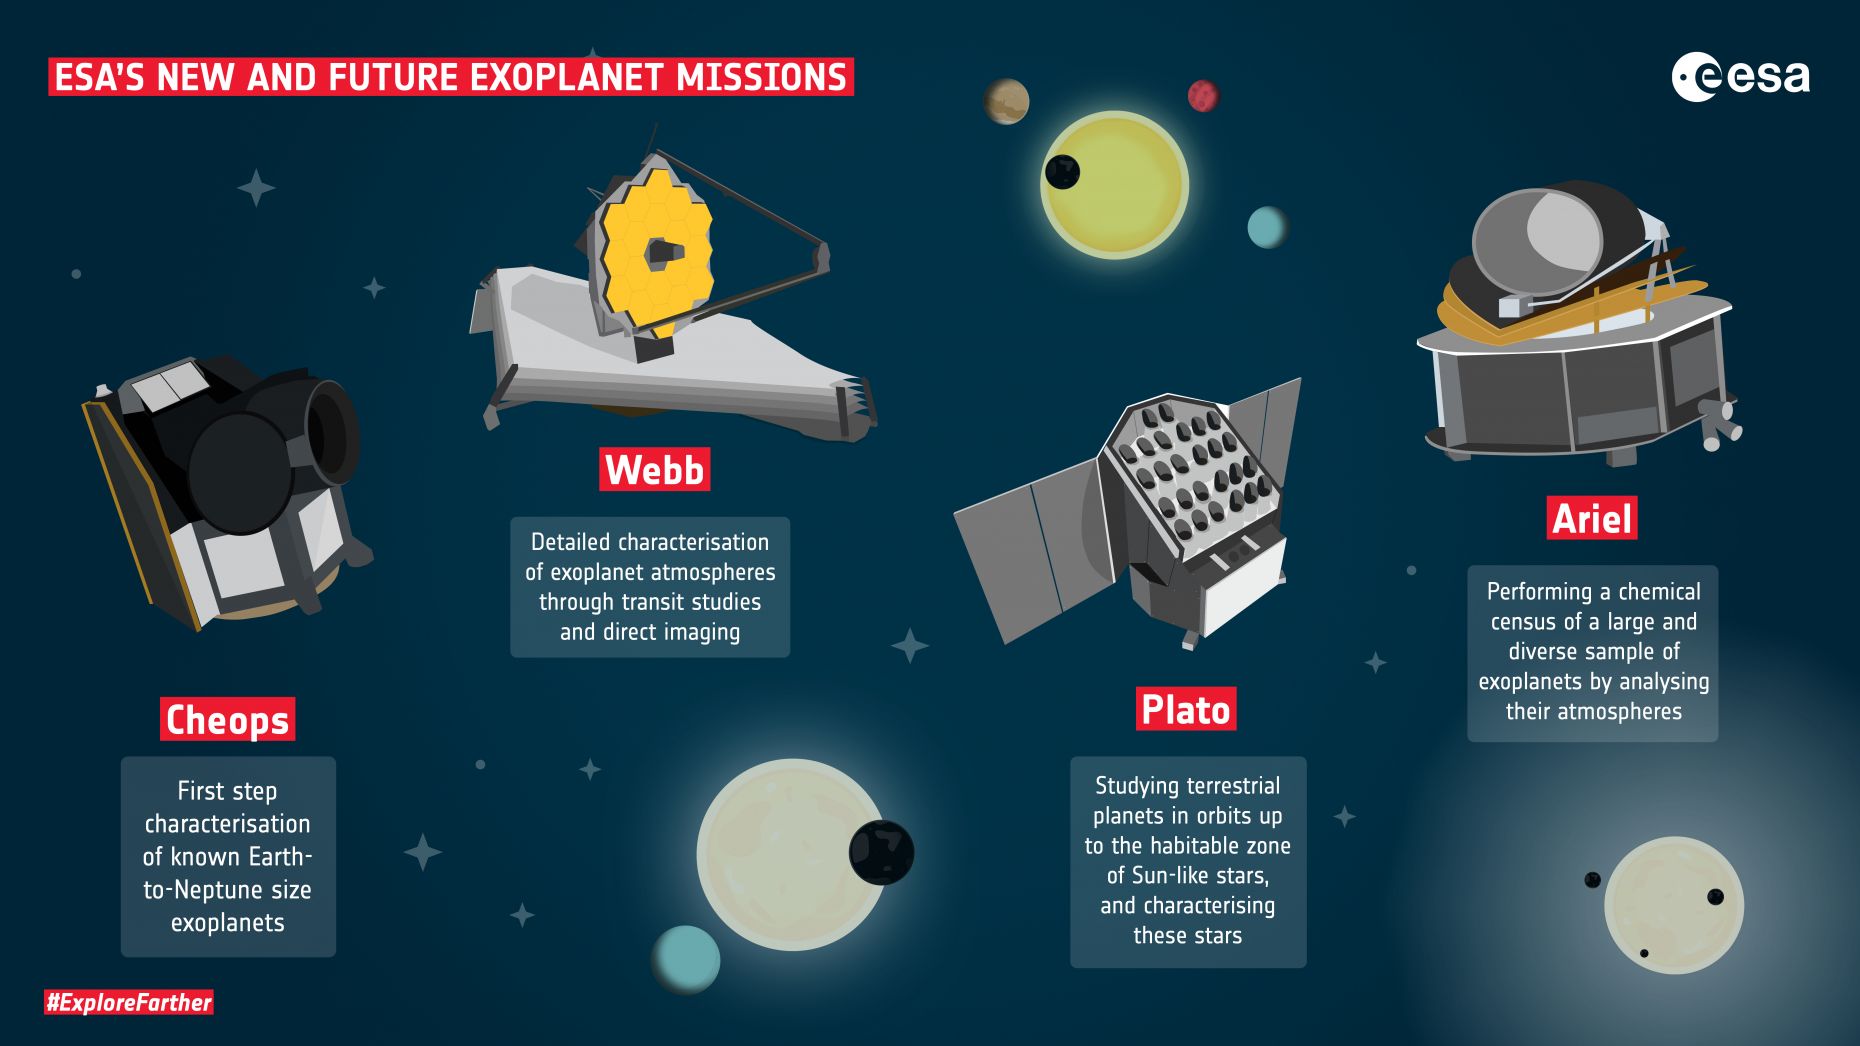 Die Grafik gibt einen Überblick über alle ESA Expoplaneten-Missionen. Während Cheops schon im All is, wird Webb erst im Dezember 2021 starten. Plato und Ariel sind in Planung 